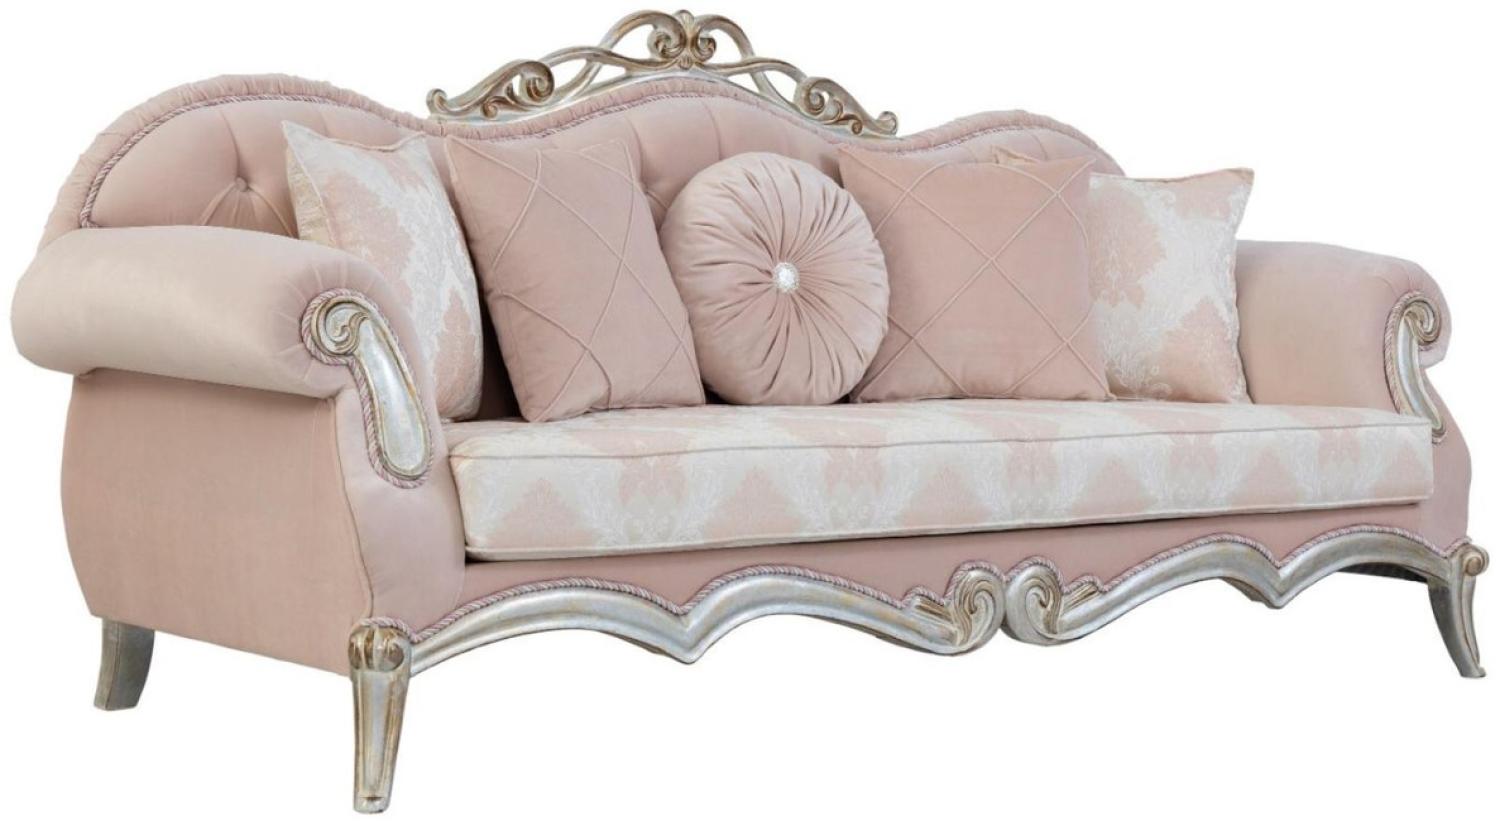 Casa Padrino Luxus Barock Wohnzimmer Sofa mit dekorativen Kissen Rosa / Silber / Gold 230 x 90 x H. 105 cm Bild 1